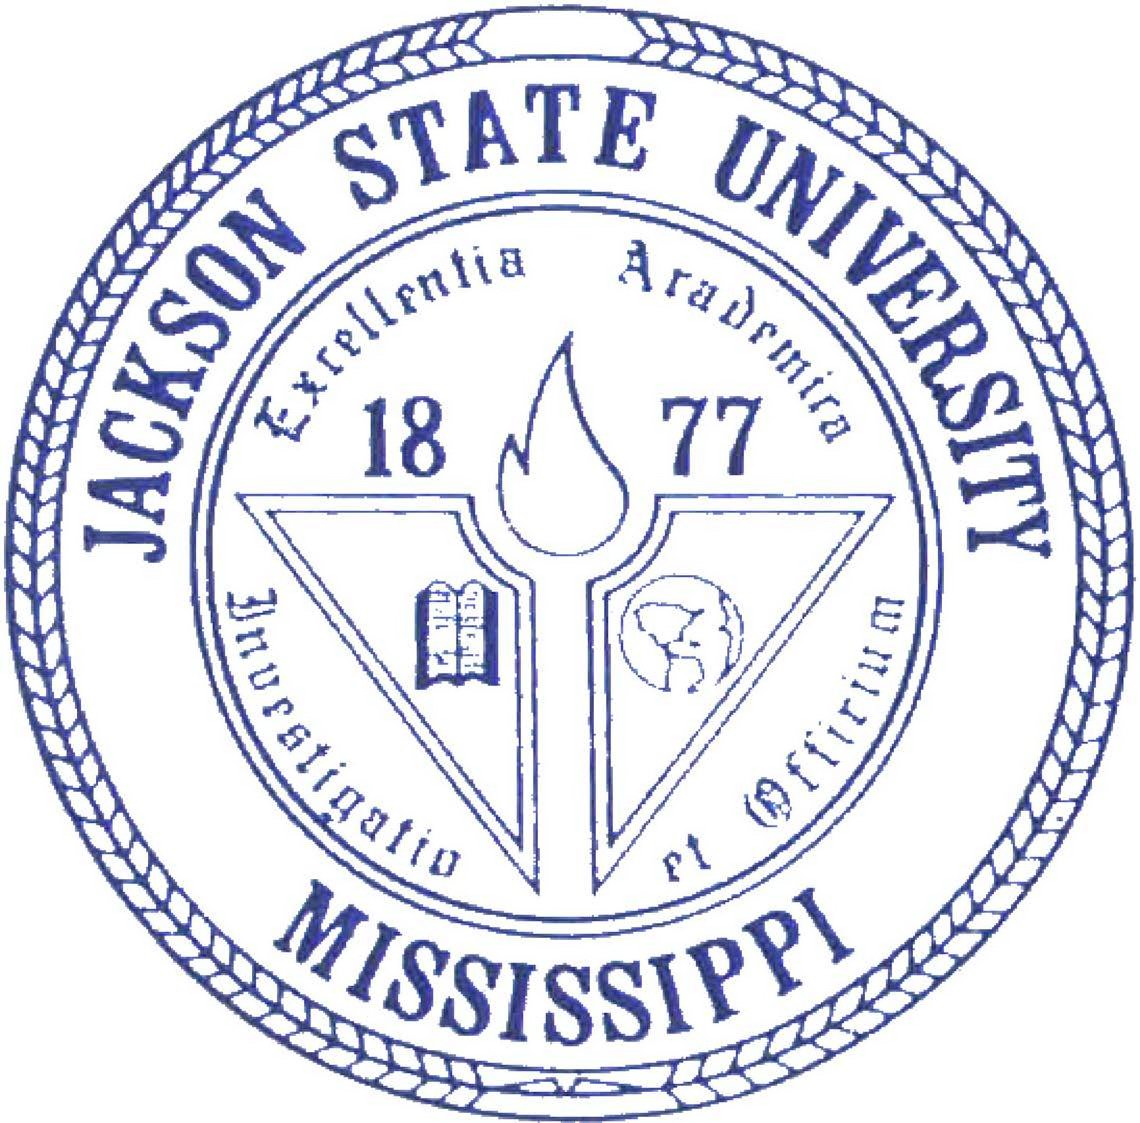 Trademark Logo JACKSON STATE UNIVERSITY MISSISSIPPI EXCELLENTIA ACADEMICA INVESTIGATIO ET OFFICIUM 1877